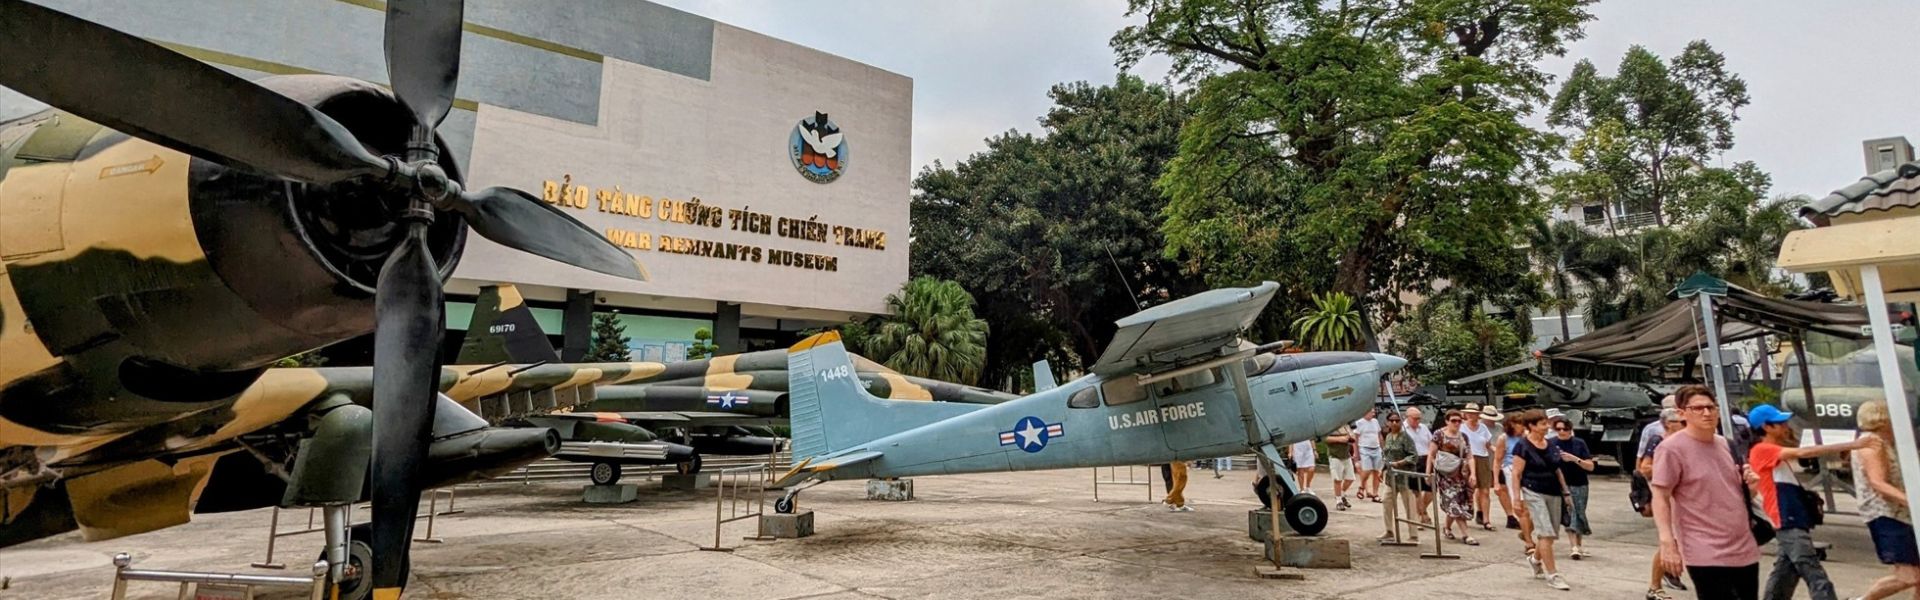 Toda información sobre el Museo de los Vestigios de la Guerra de Vietnam